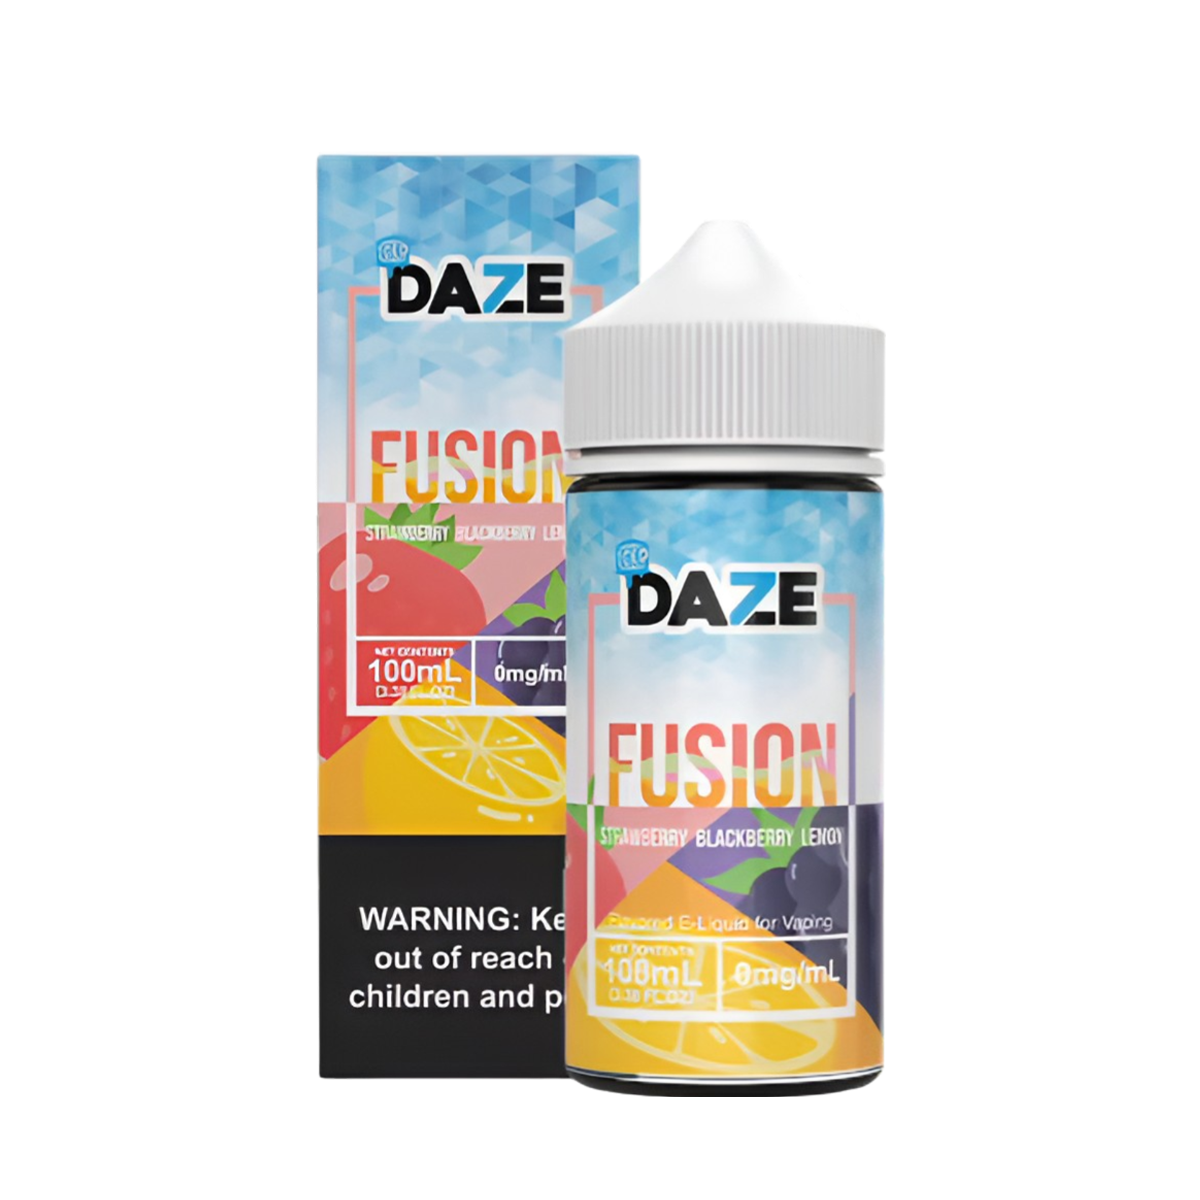 7 Daze Fusion Iced Freebase Vape Juice 0 Mg 100 ML Strawberry Blackberry Lemon Iced